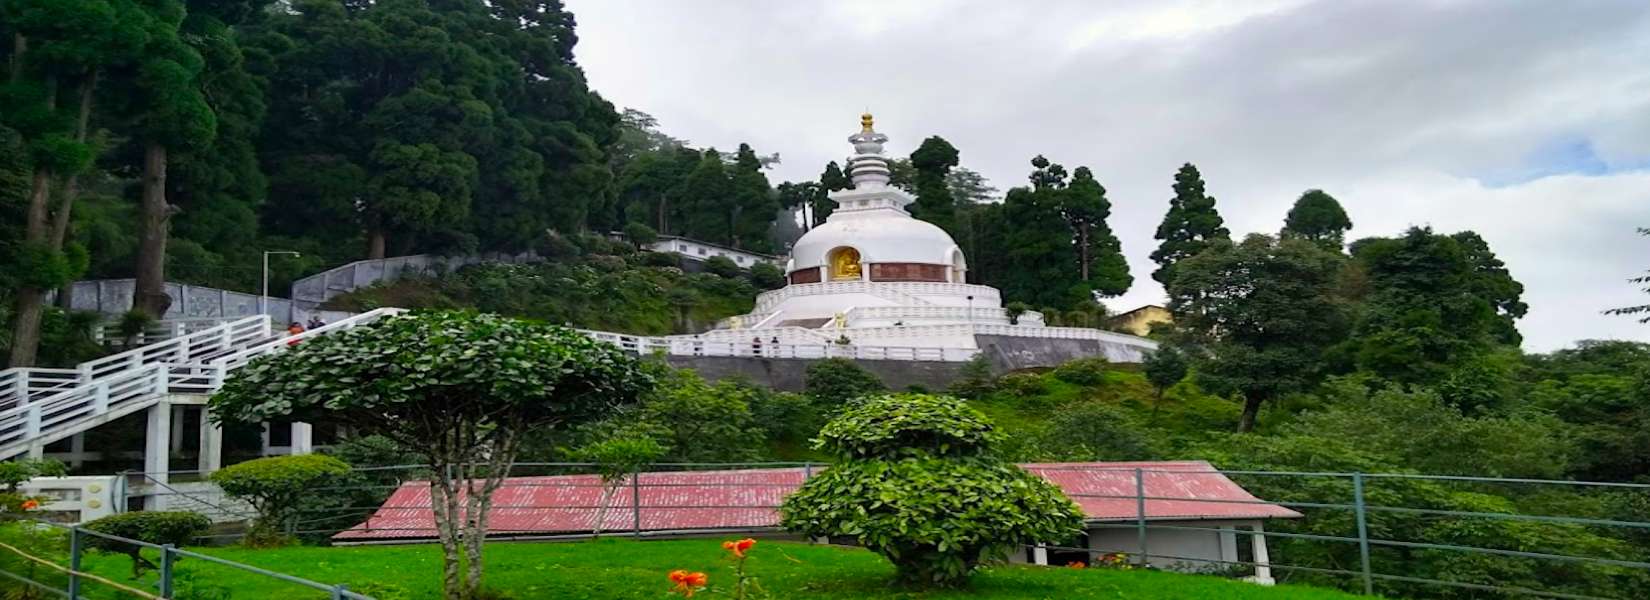 Japanese Peace Pagoda in Darjeeling